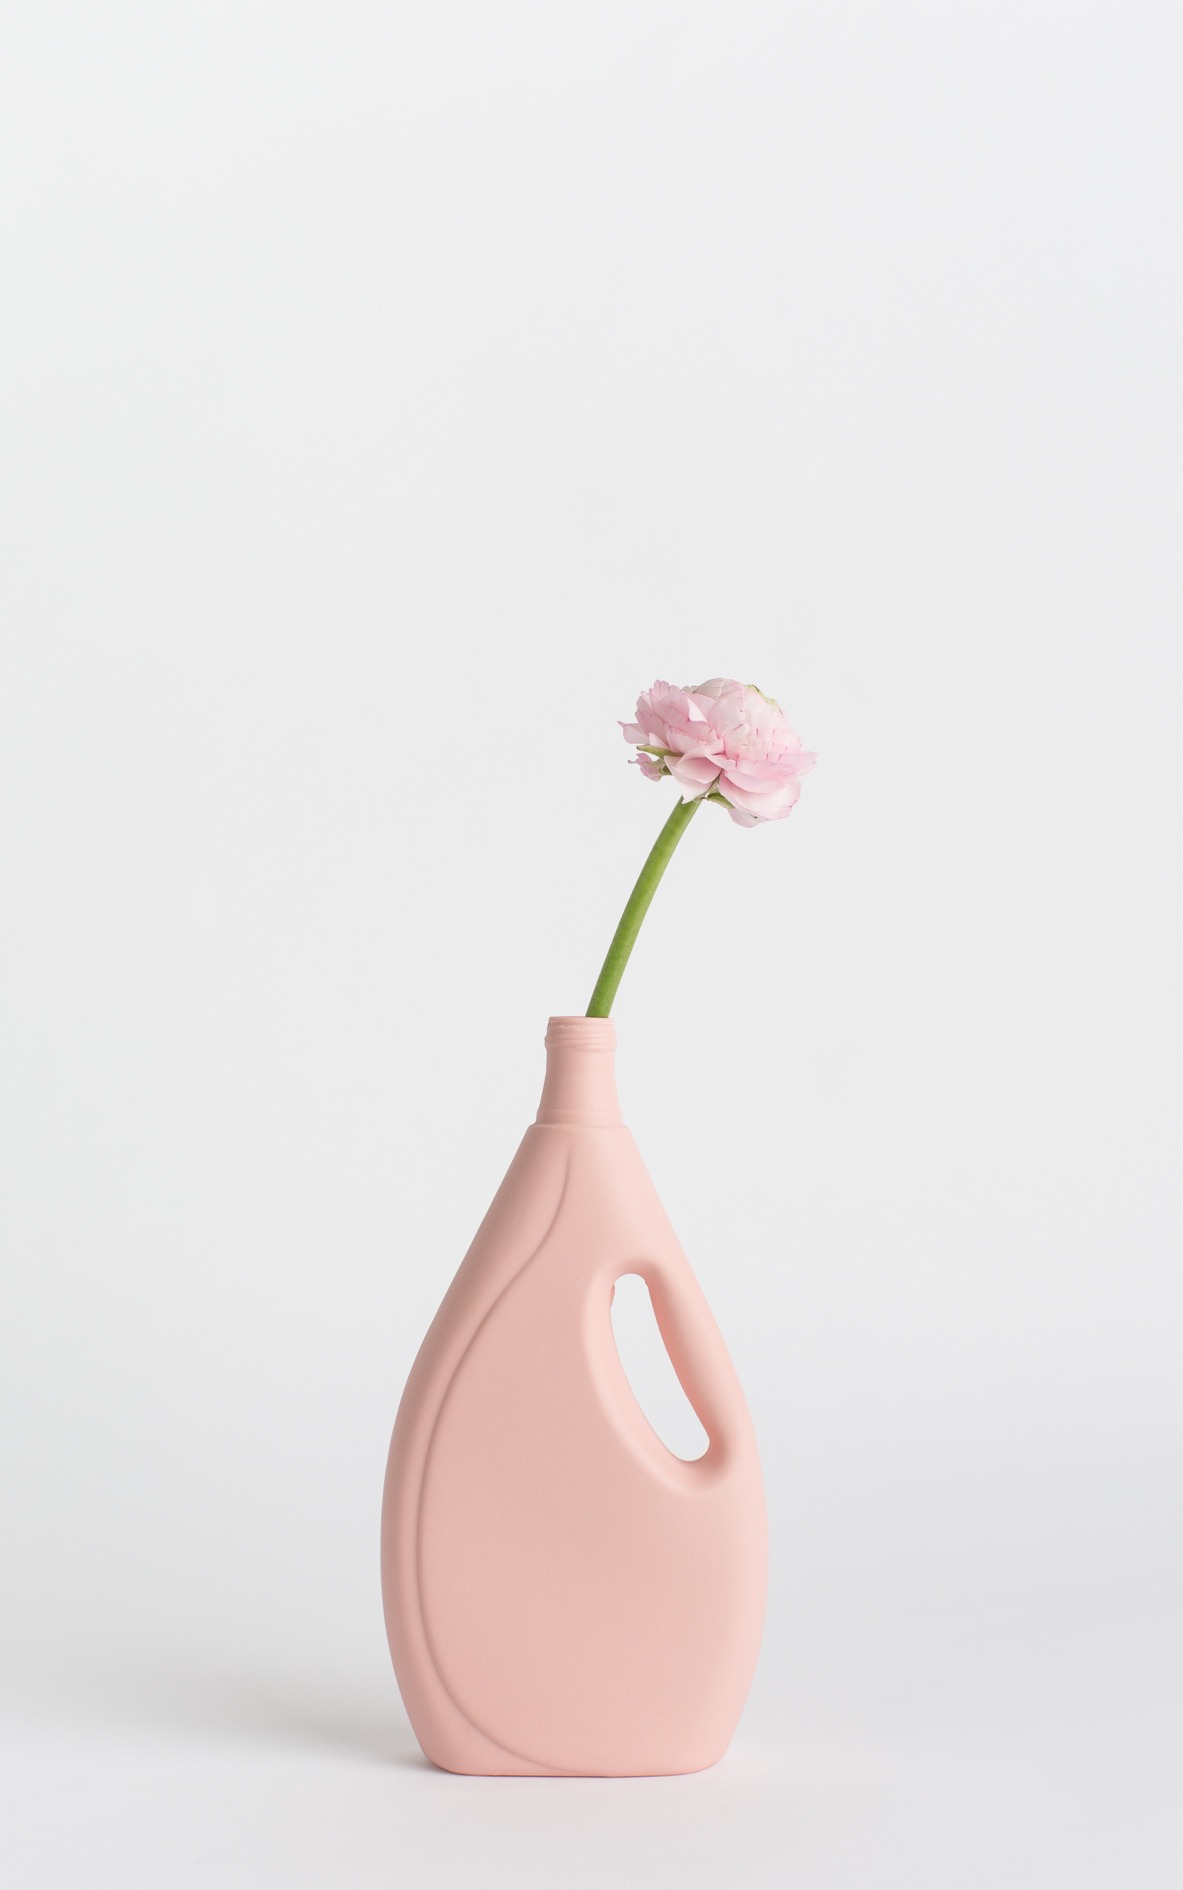 bottle vase #7 rose pink with flower